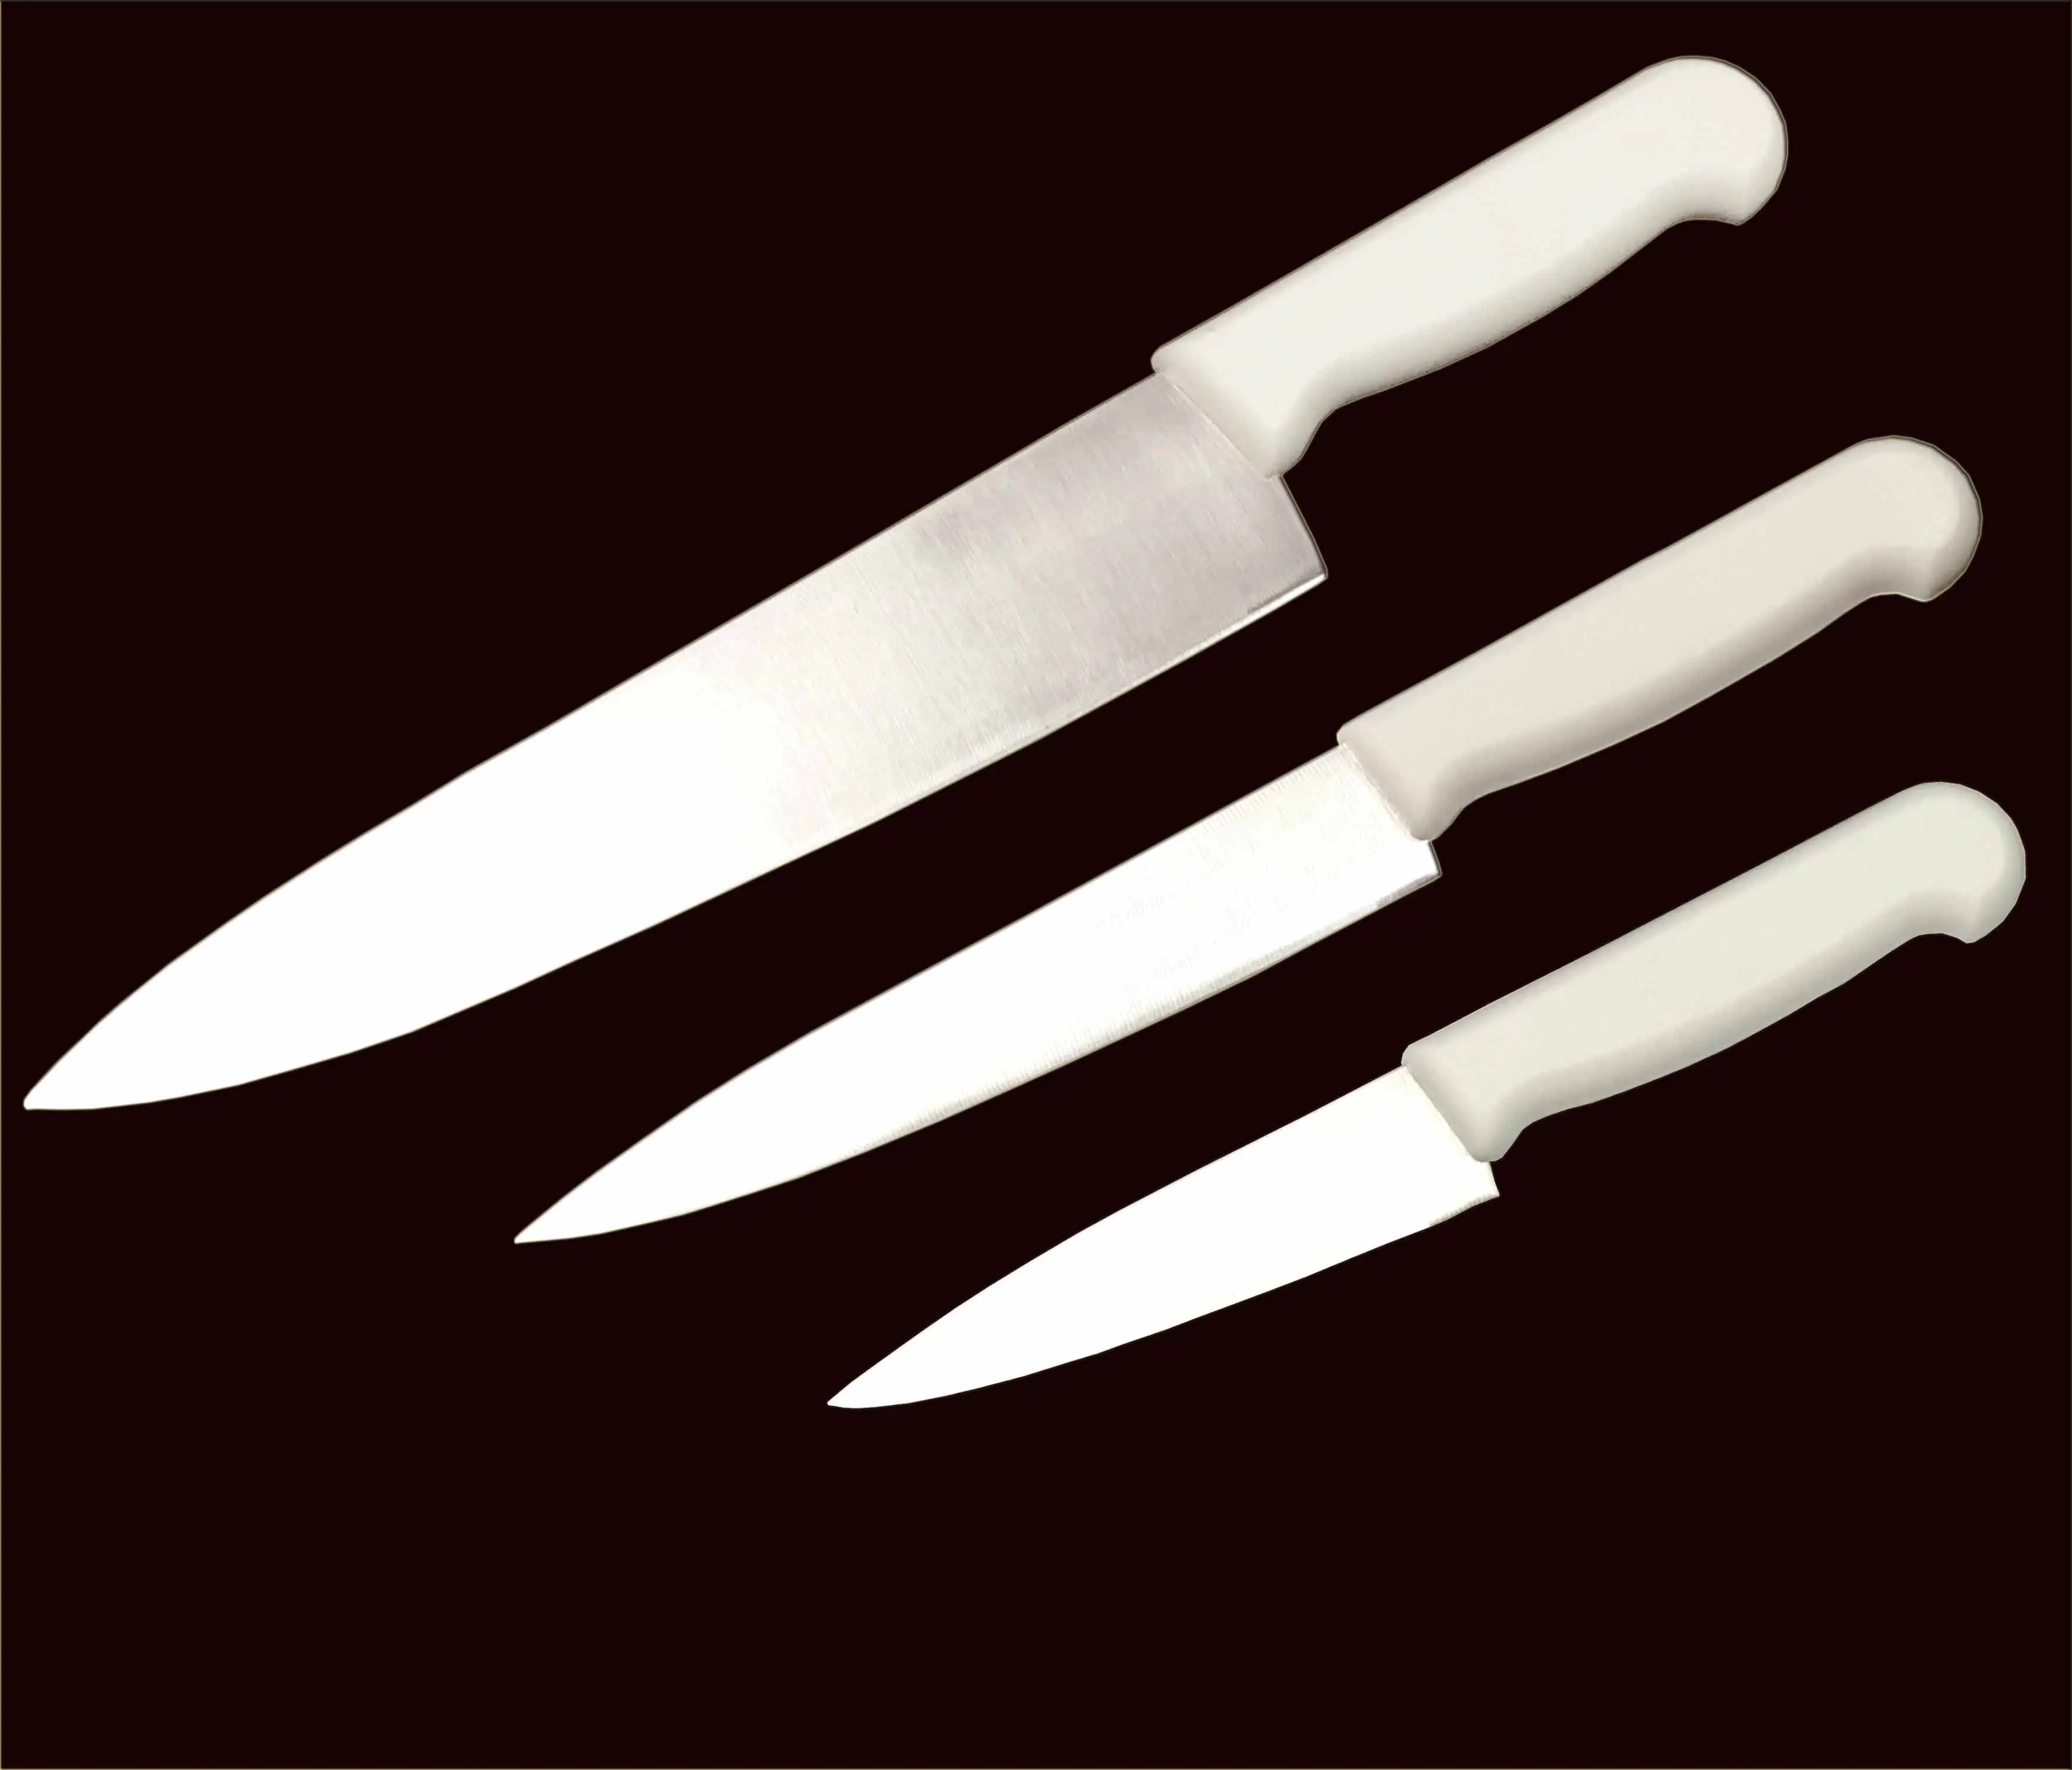 سكين طاه عالي الجودة من الفولاذ المقاوم للصدأ للمطبخ